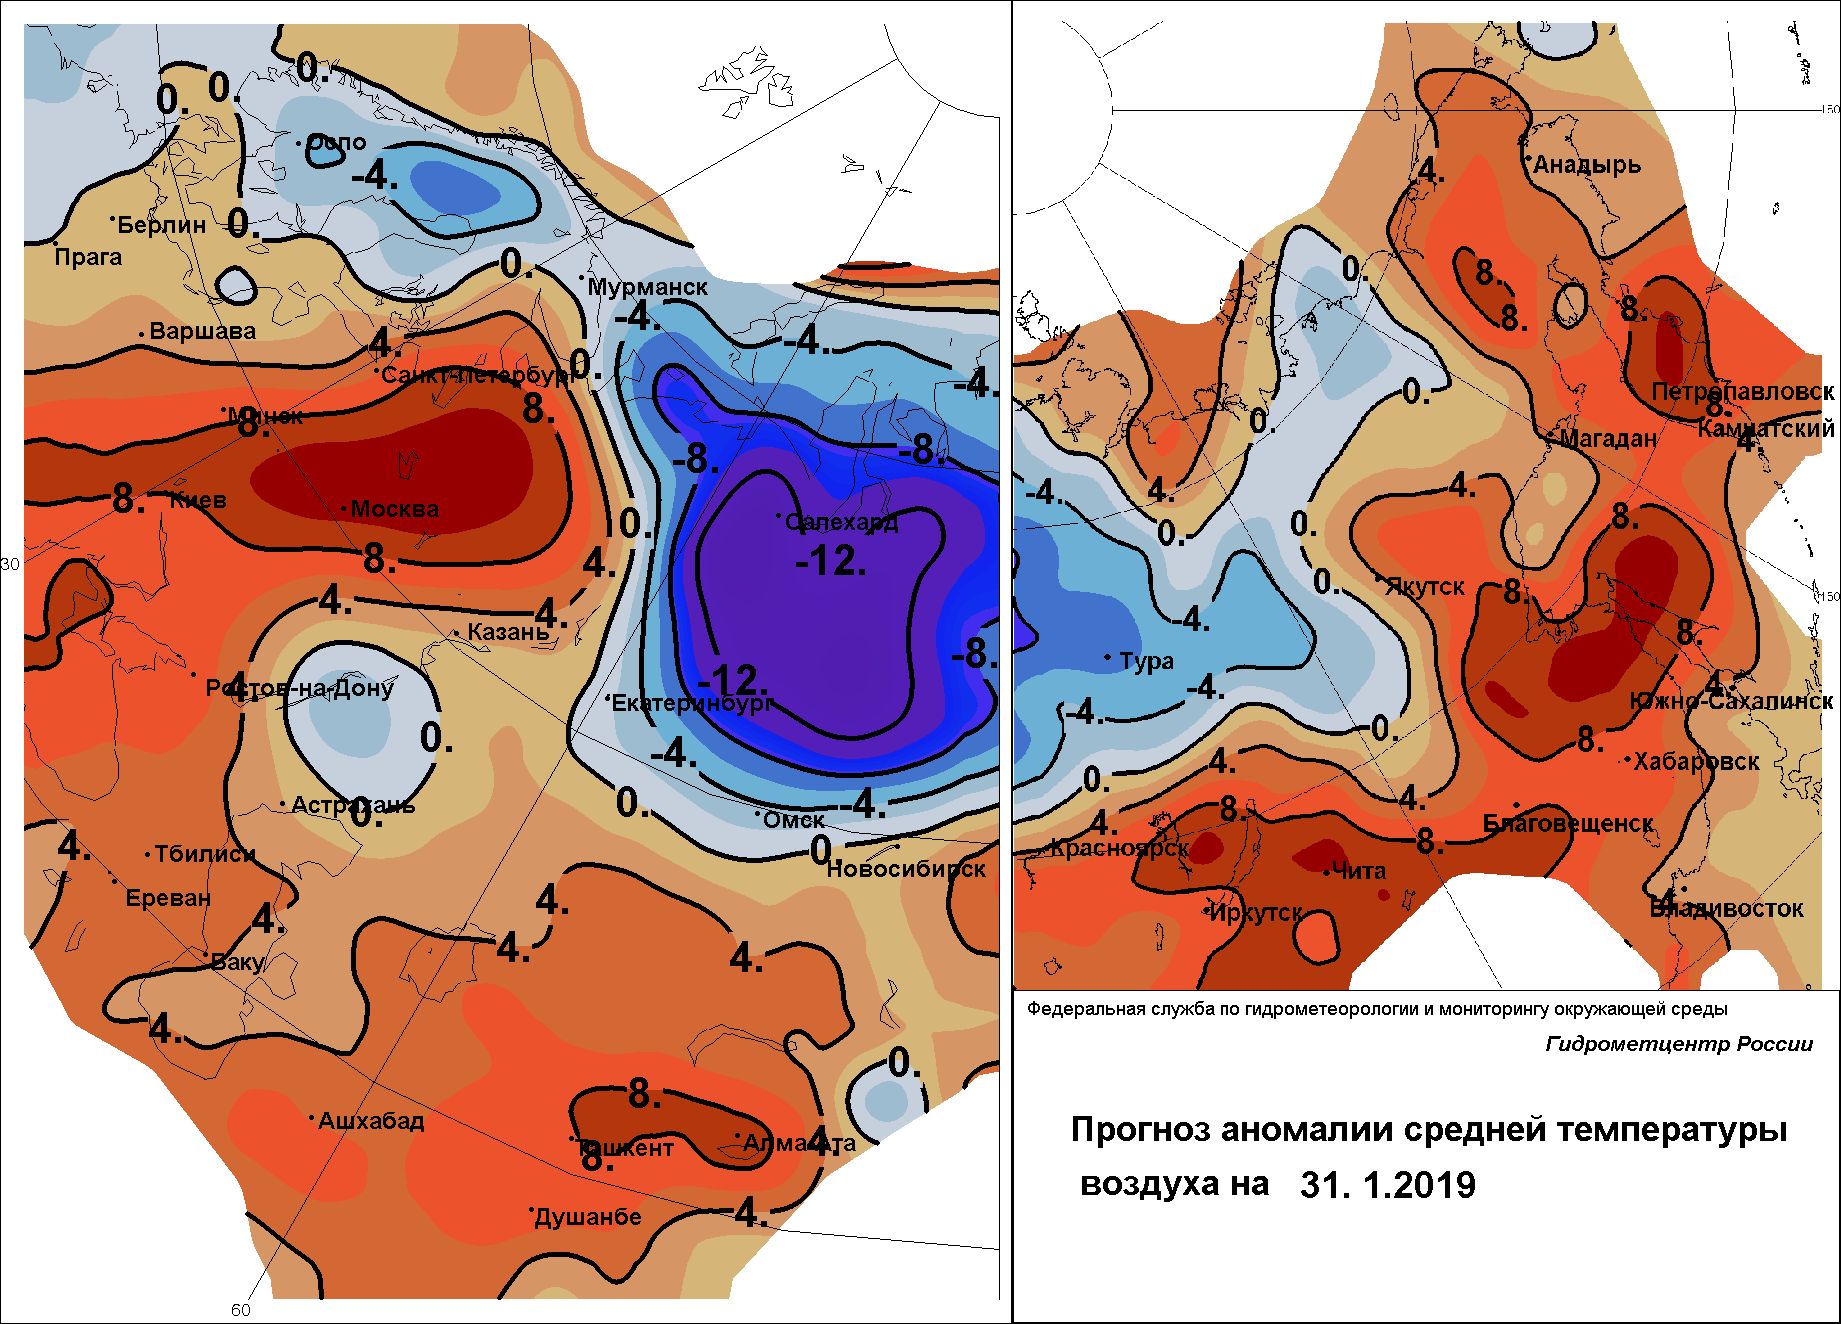 Карти на очакваните аномалии на приземната температура в Сибир утре, след 3  и  след 5 дни. Вижда се как аномалията нараства по площ и се разширява териториално.